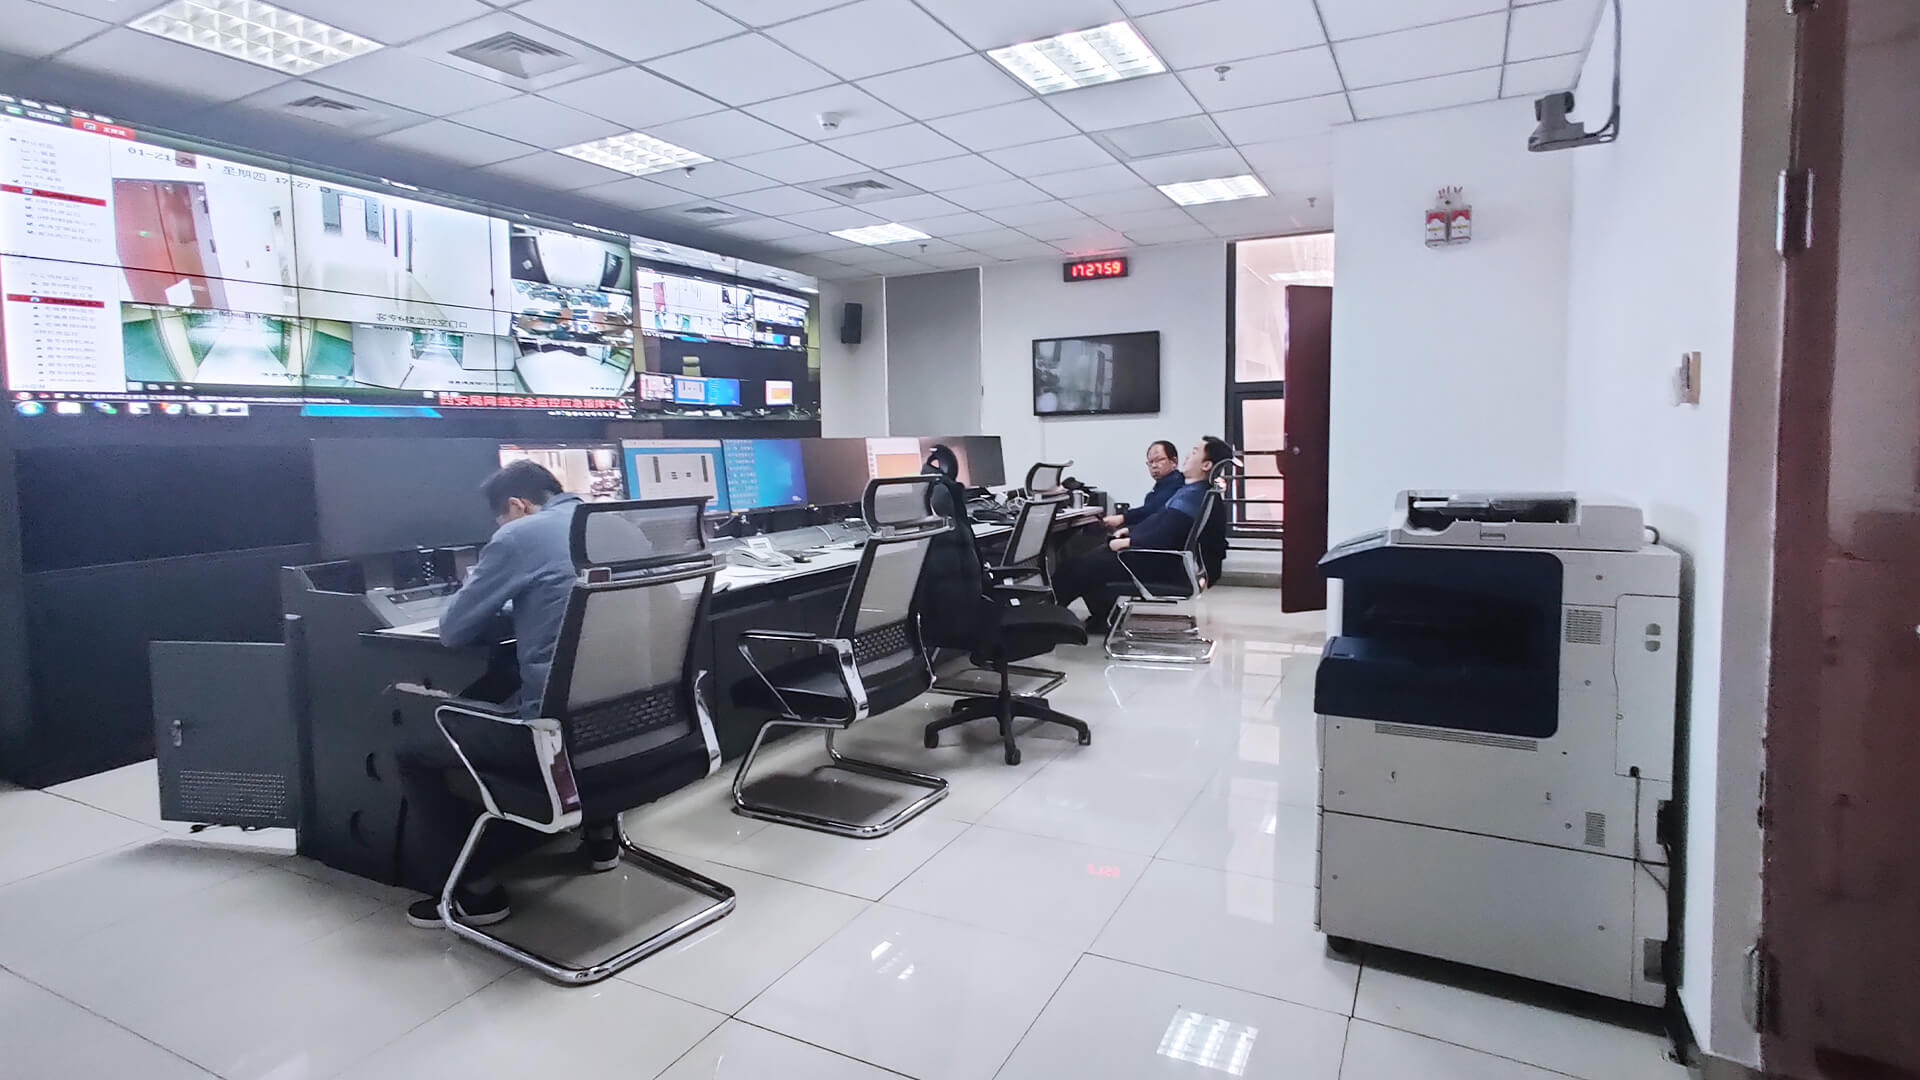 全数字手拉手会议系统应用西安铁路局安全指挥中心